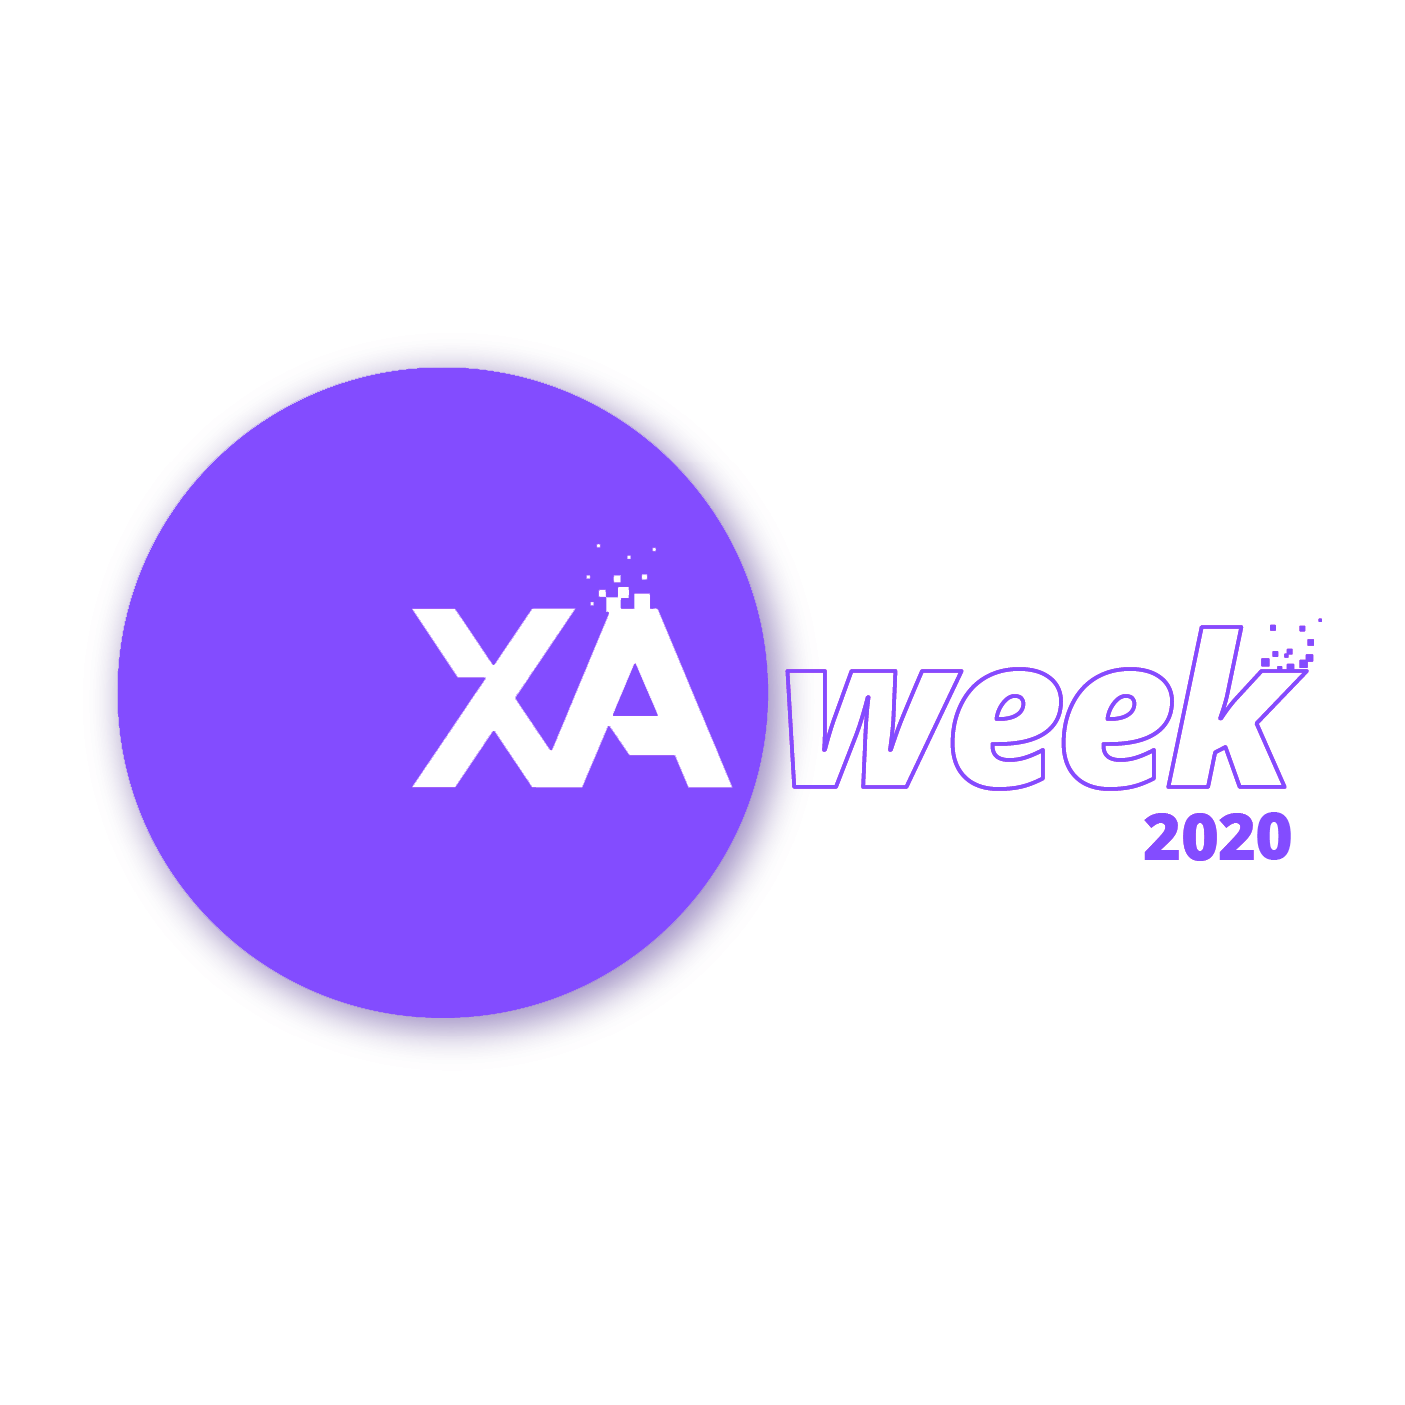 eXperience Agile Week 2020